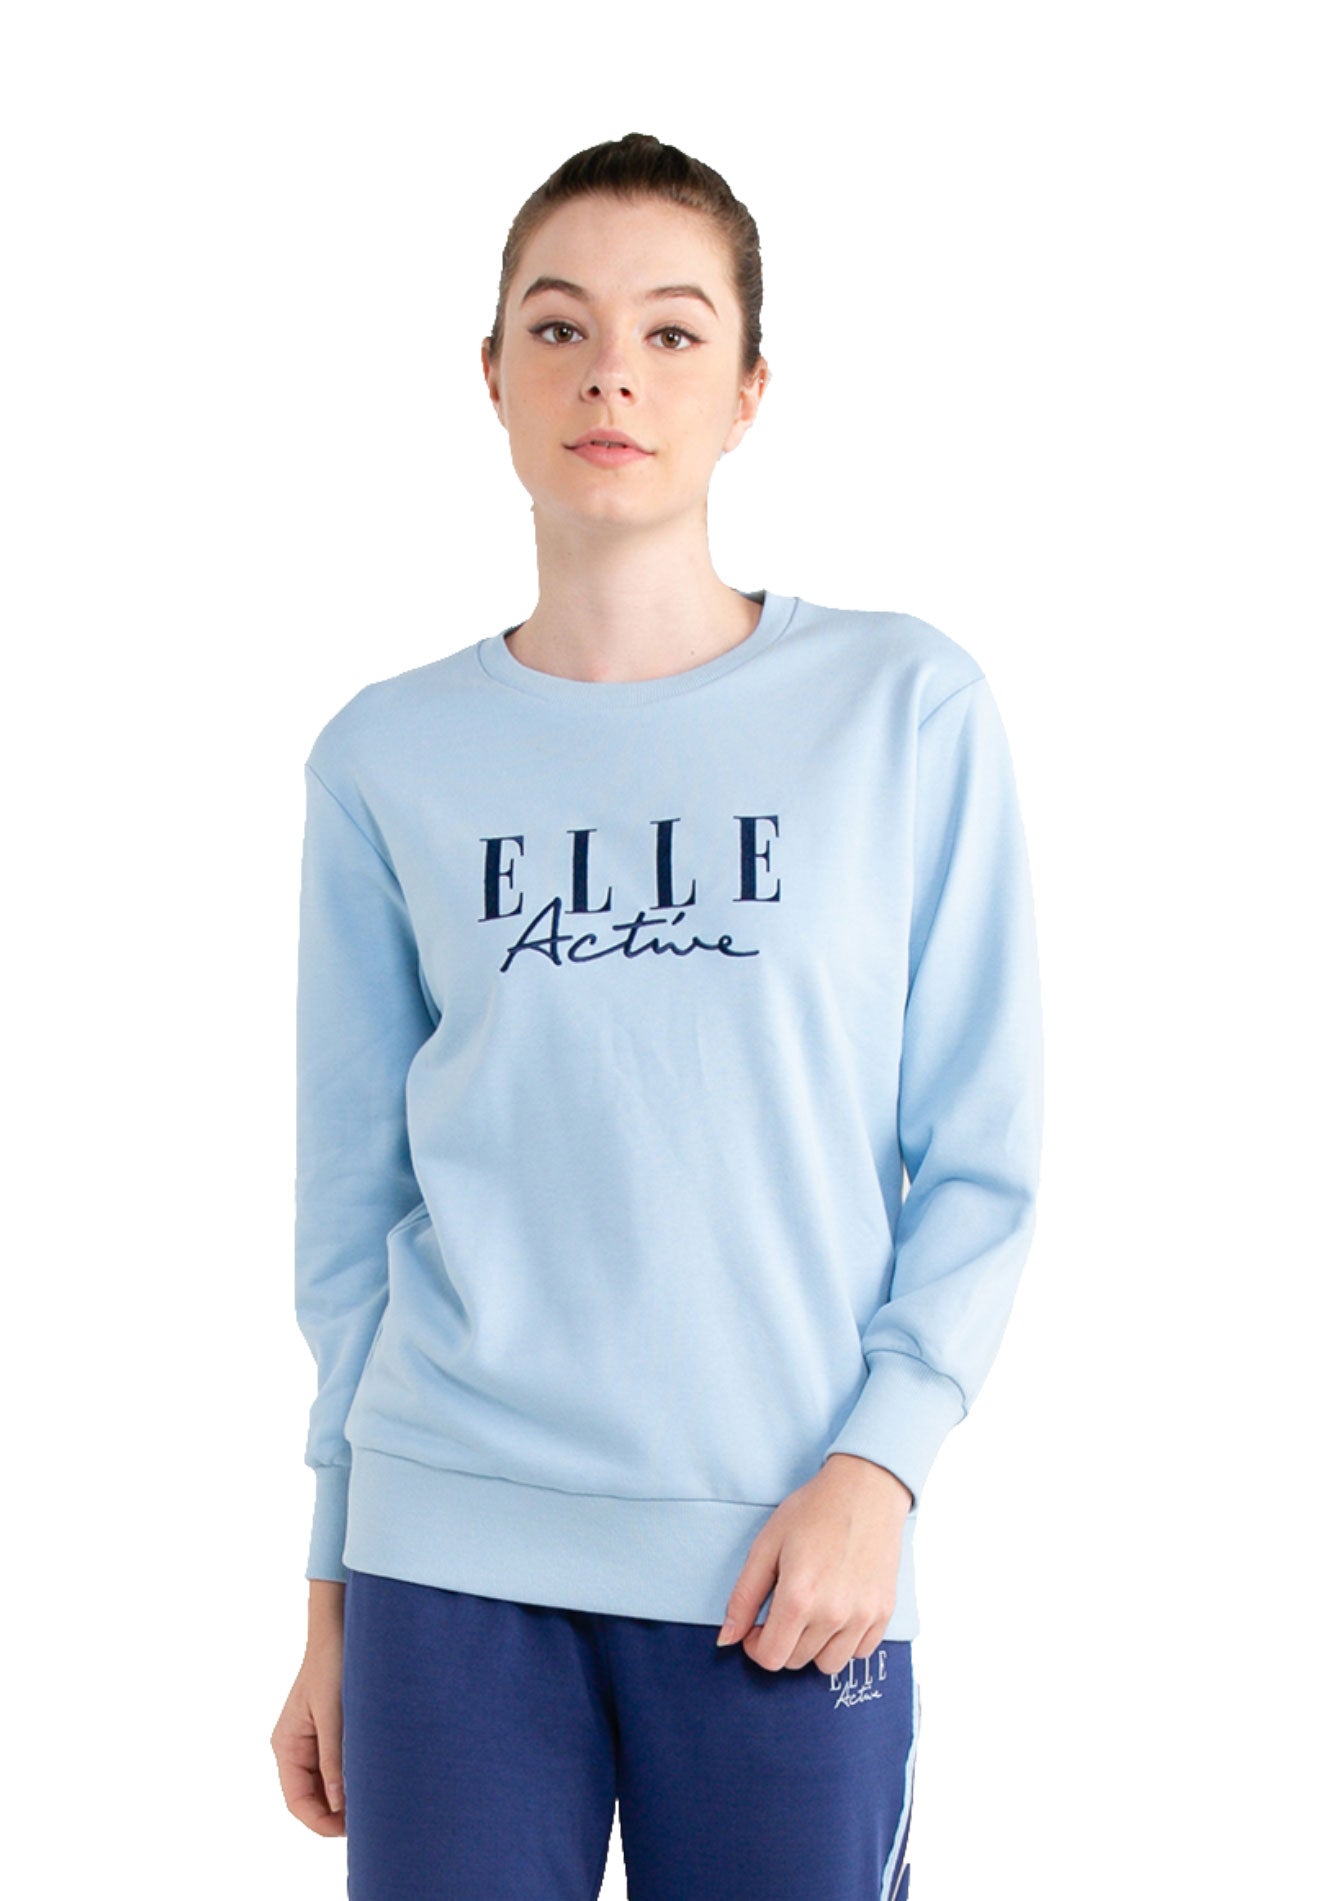 ELLE Active Logo Basic Sweater